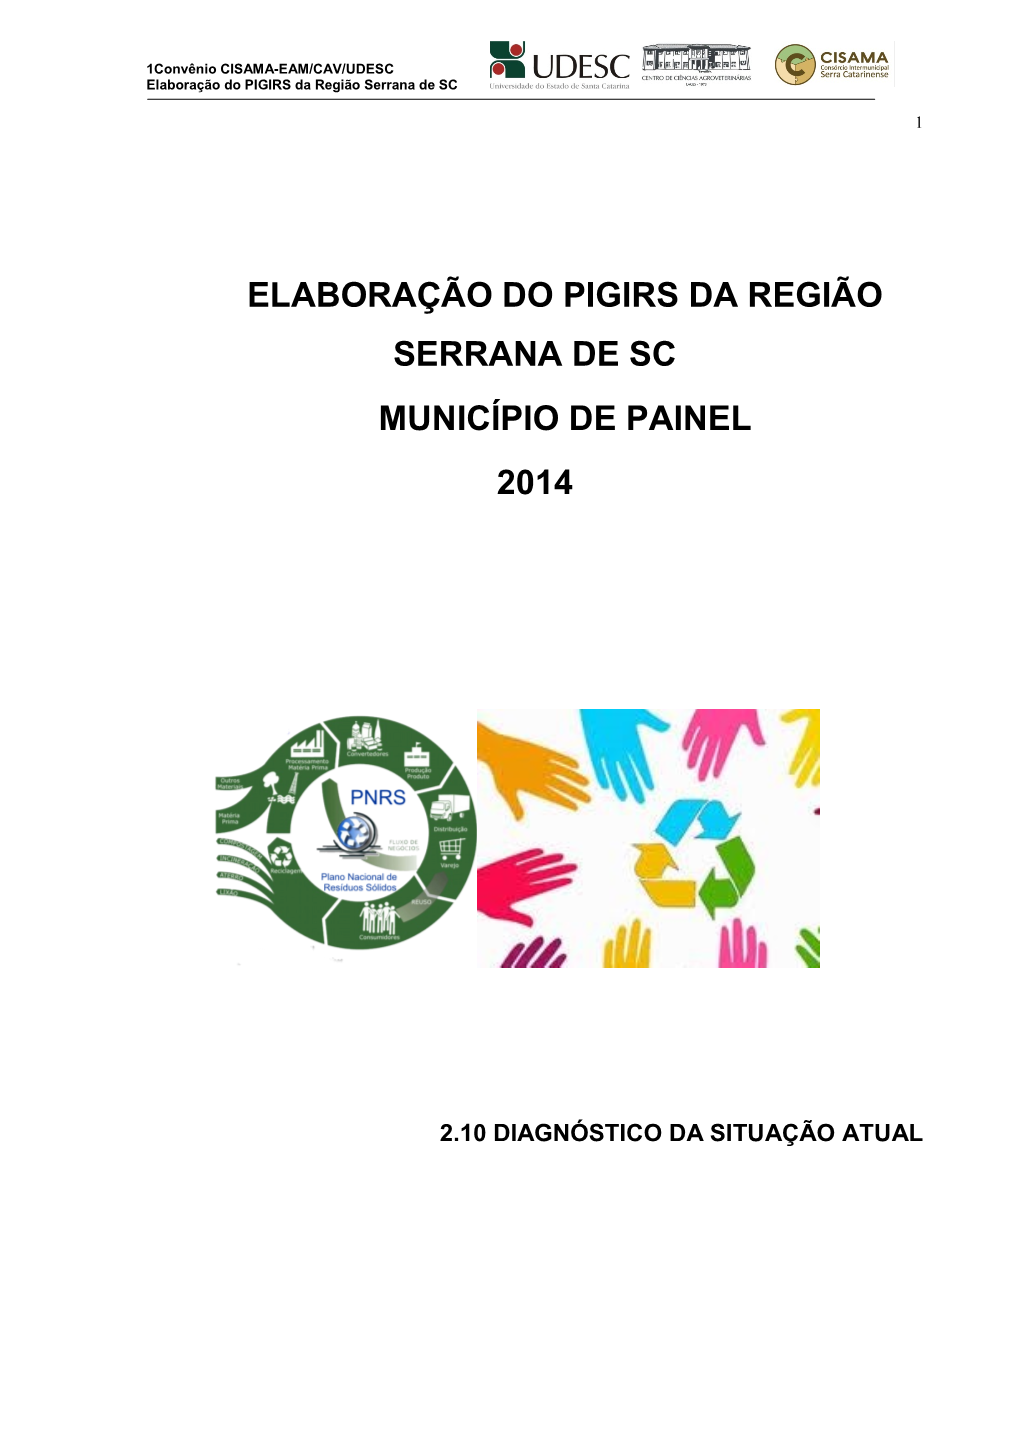 Elaboração Do PIGIRS Da Região Serrana De SC